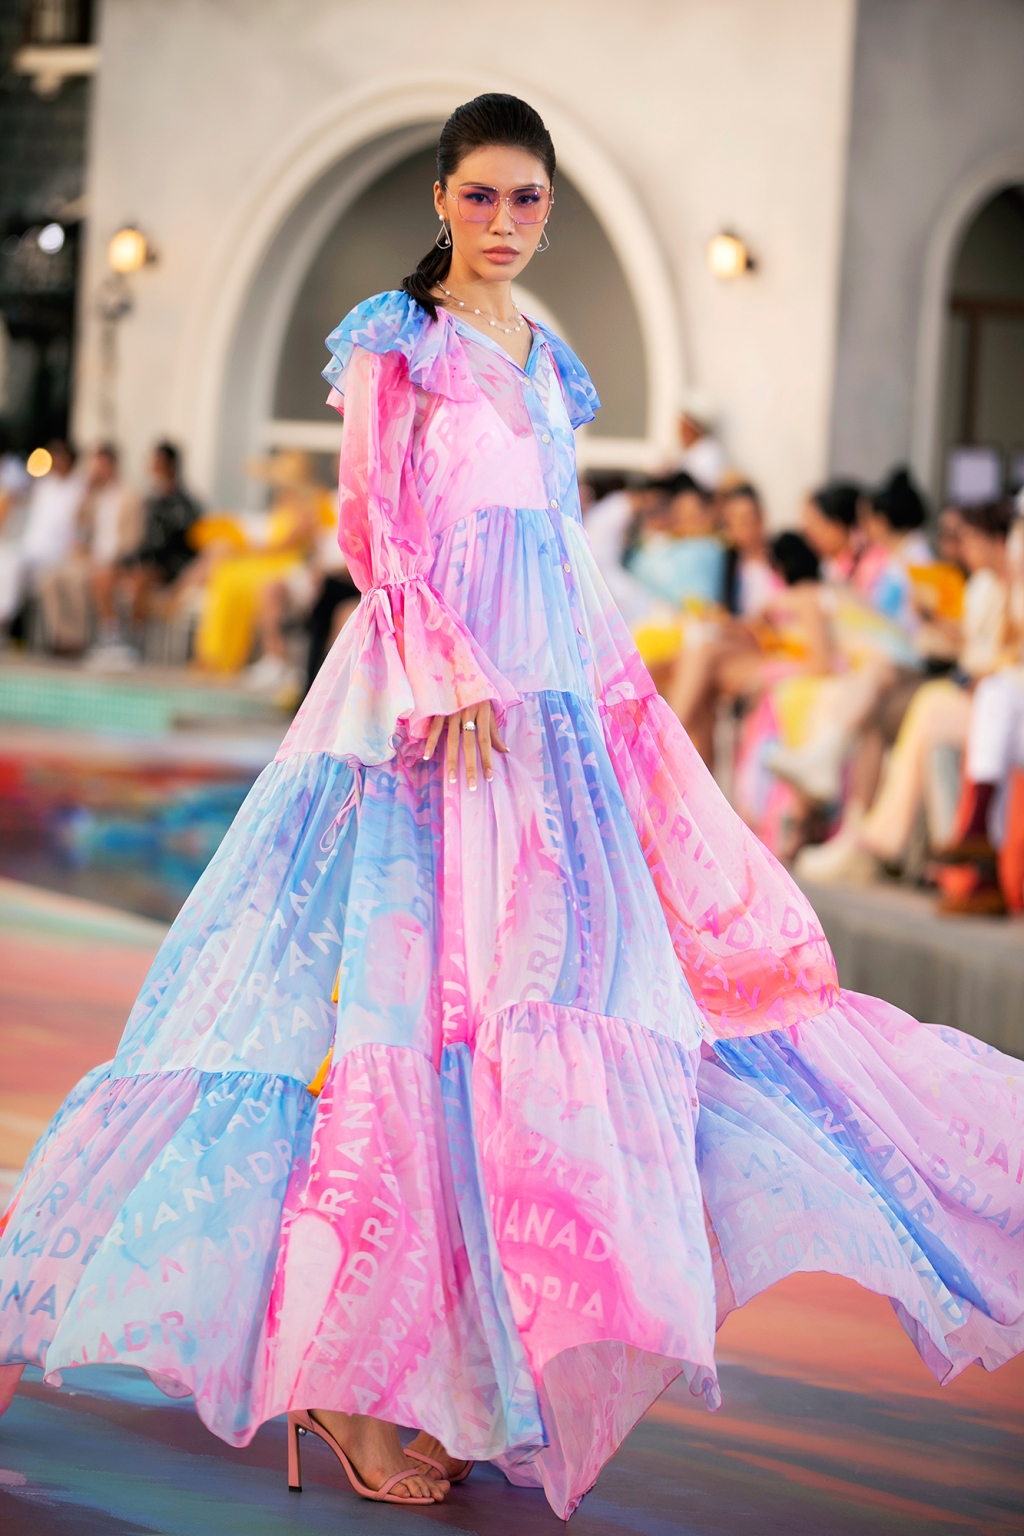 'Chị đại' Thanh Hằng khiến dân tình 'lâng lâng' khi sải bước dưới ánh hoàng hôn tại 'Fashion Voyage'